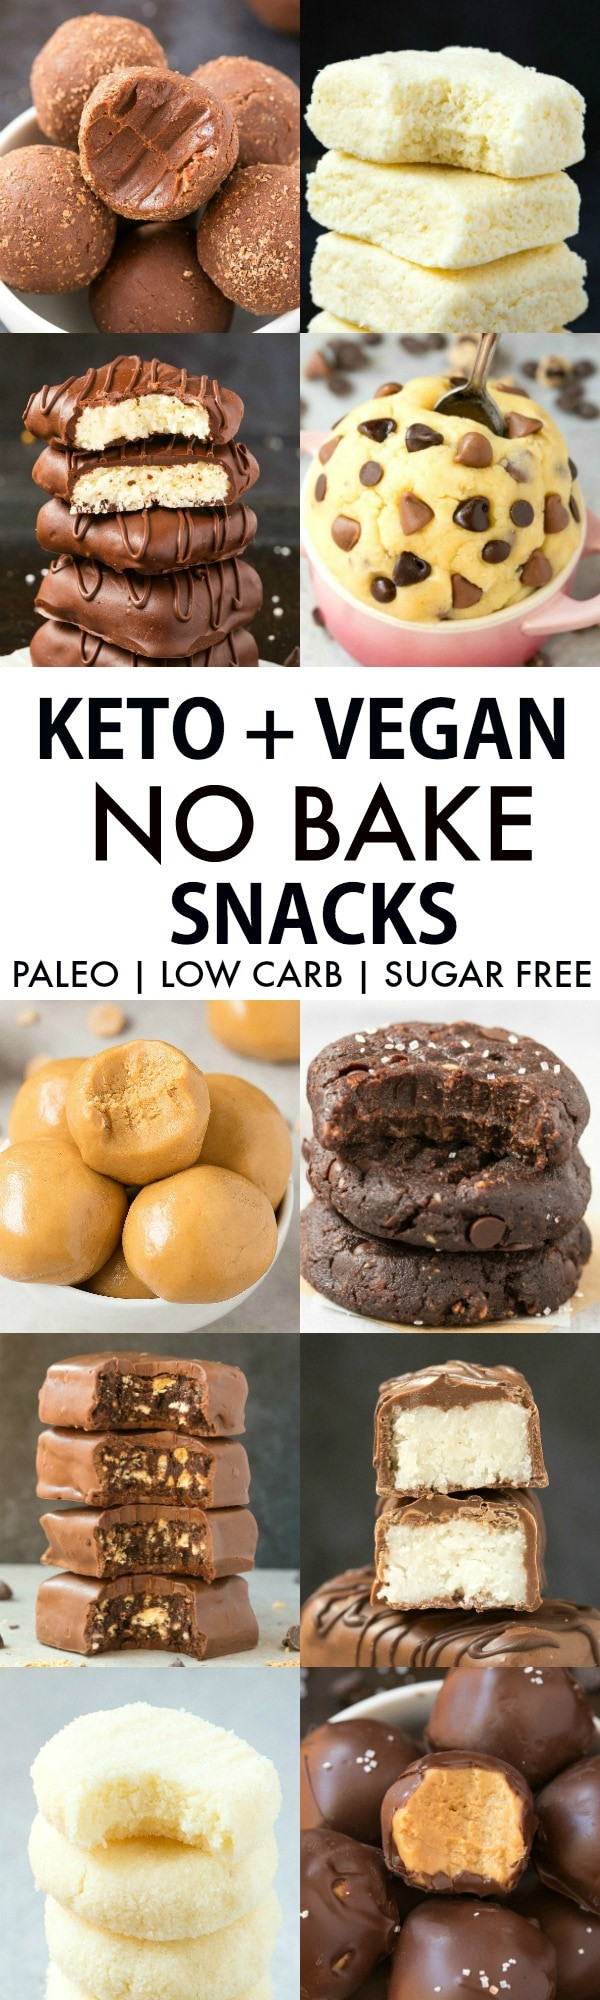 Vegan Keto Snacks
 Easy Keto Vegan No Bake Snacks Paleo Low Carb